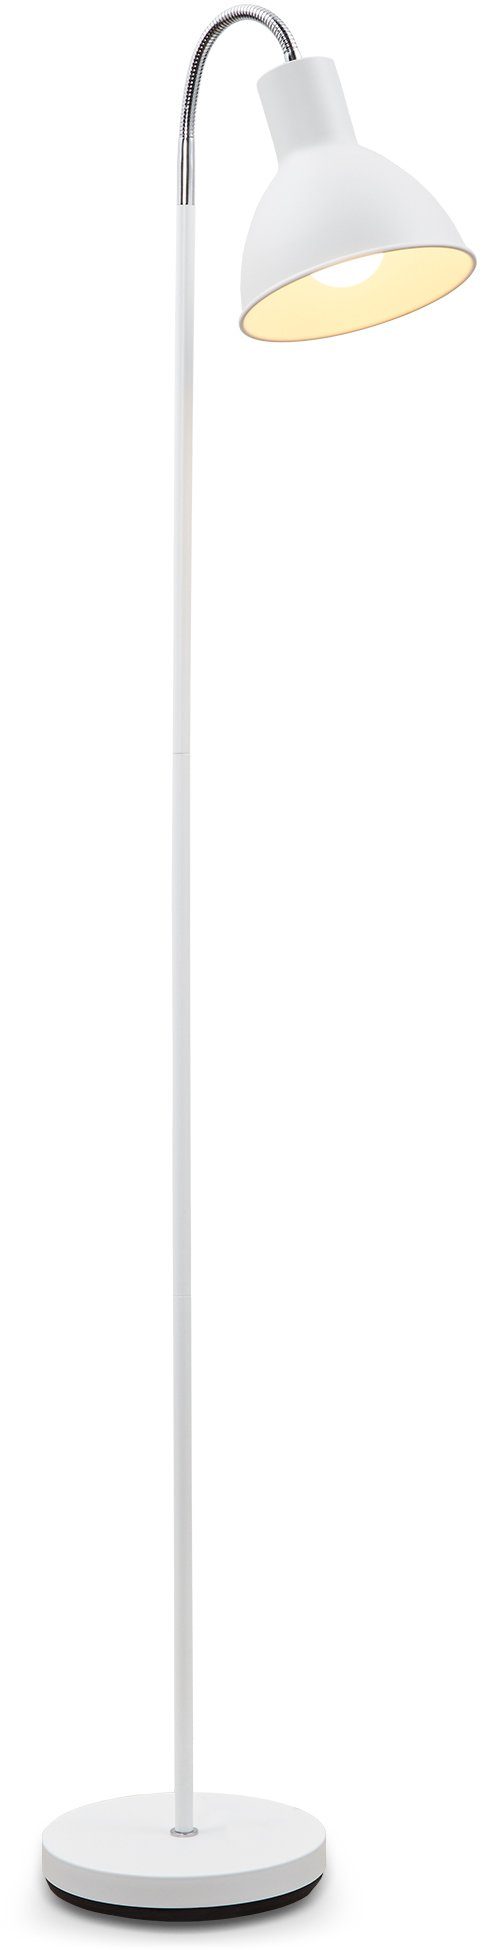 Stehlampe, Industrial Stehleuchte Warmweiß, Metall B.K.Licht Stand-Leuchte LED Design ohne Leuchtmittel, weiß E27 schwenkbar